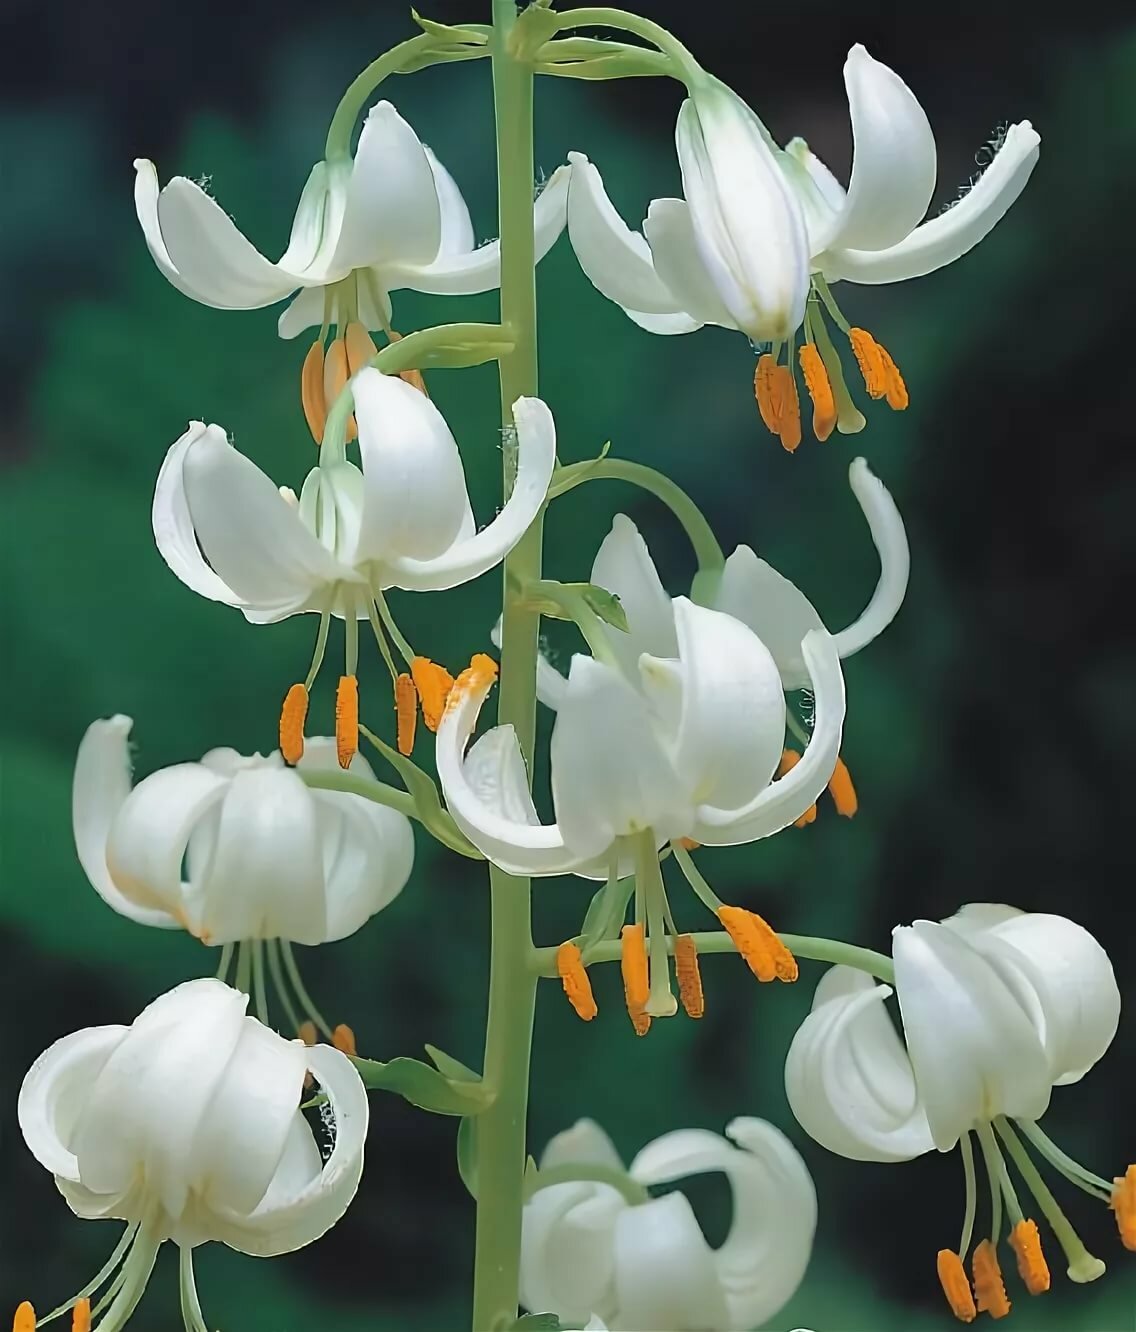 Лилия растение фото с названиями и описанием